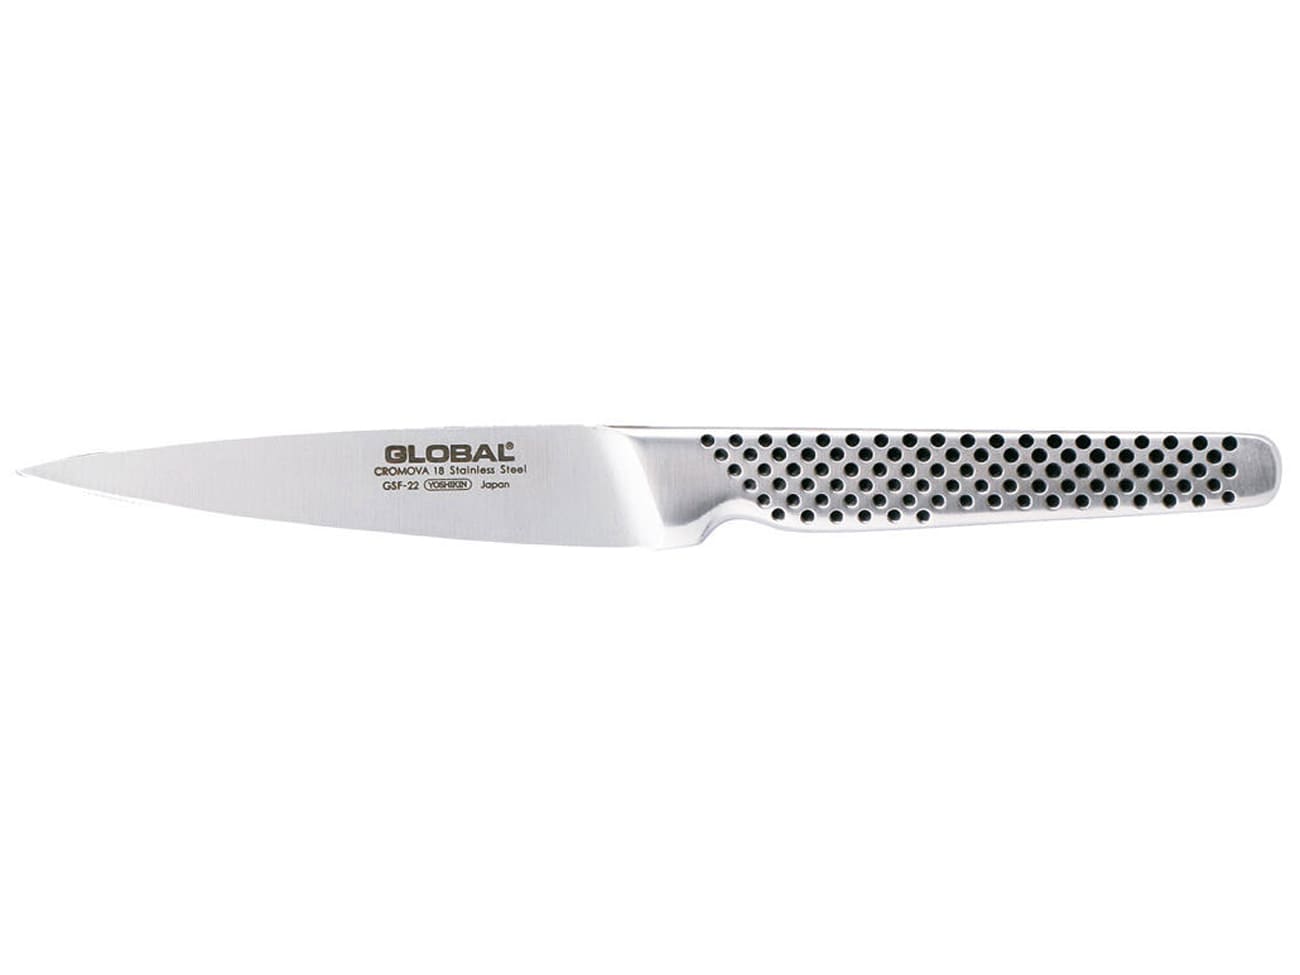 Couteau d'office plat GSF22 - Lame 11 cm - Global - Meilleur du Chef